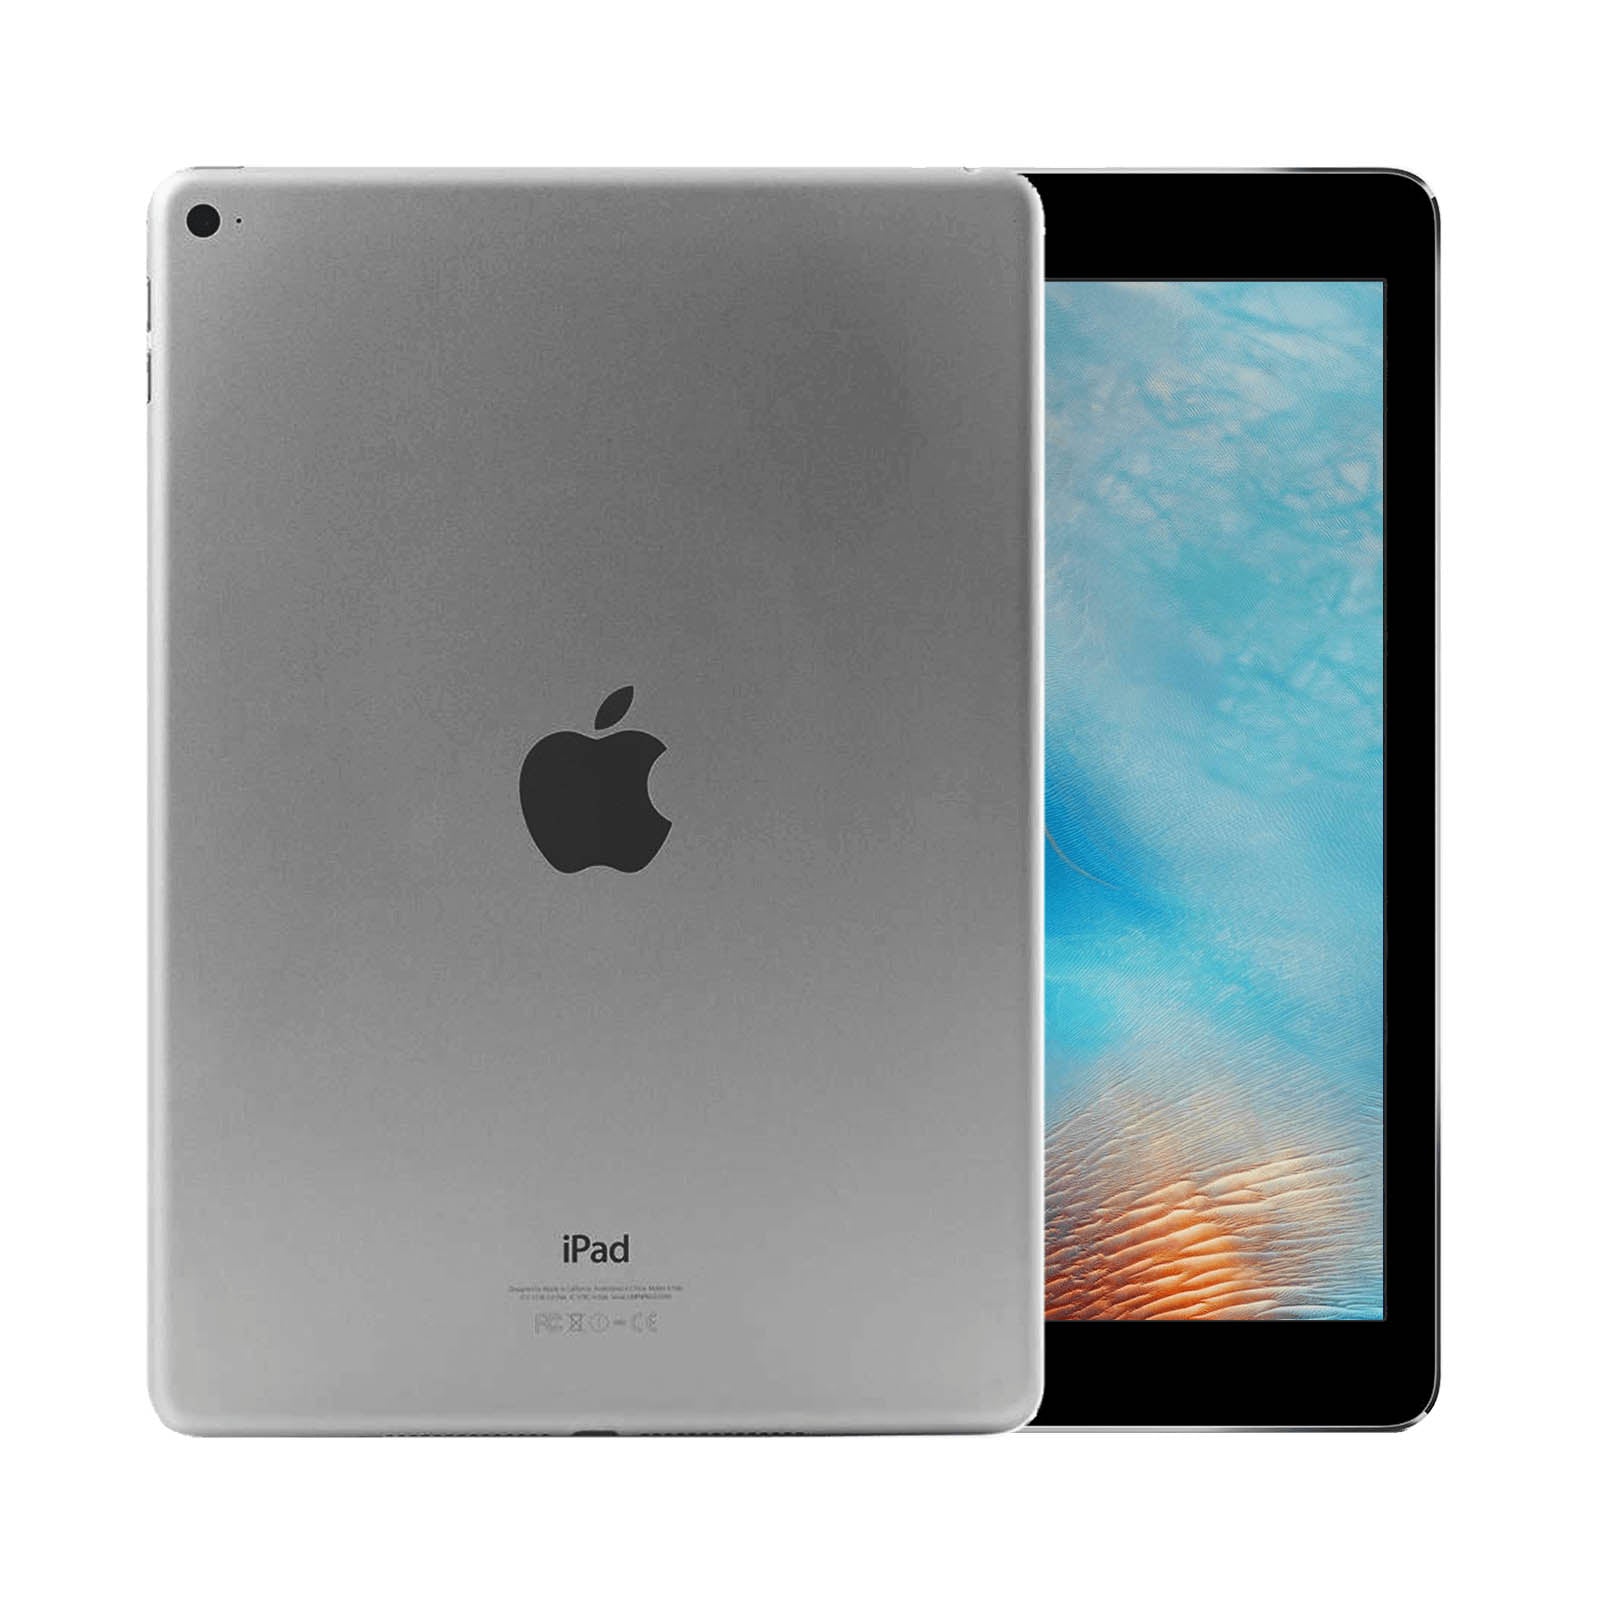 Apple iPad Air 2 64GB Space Grey Fair -WiFi